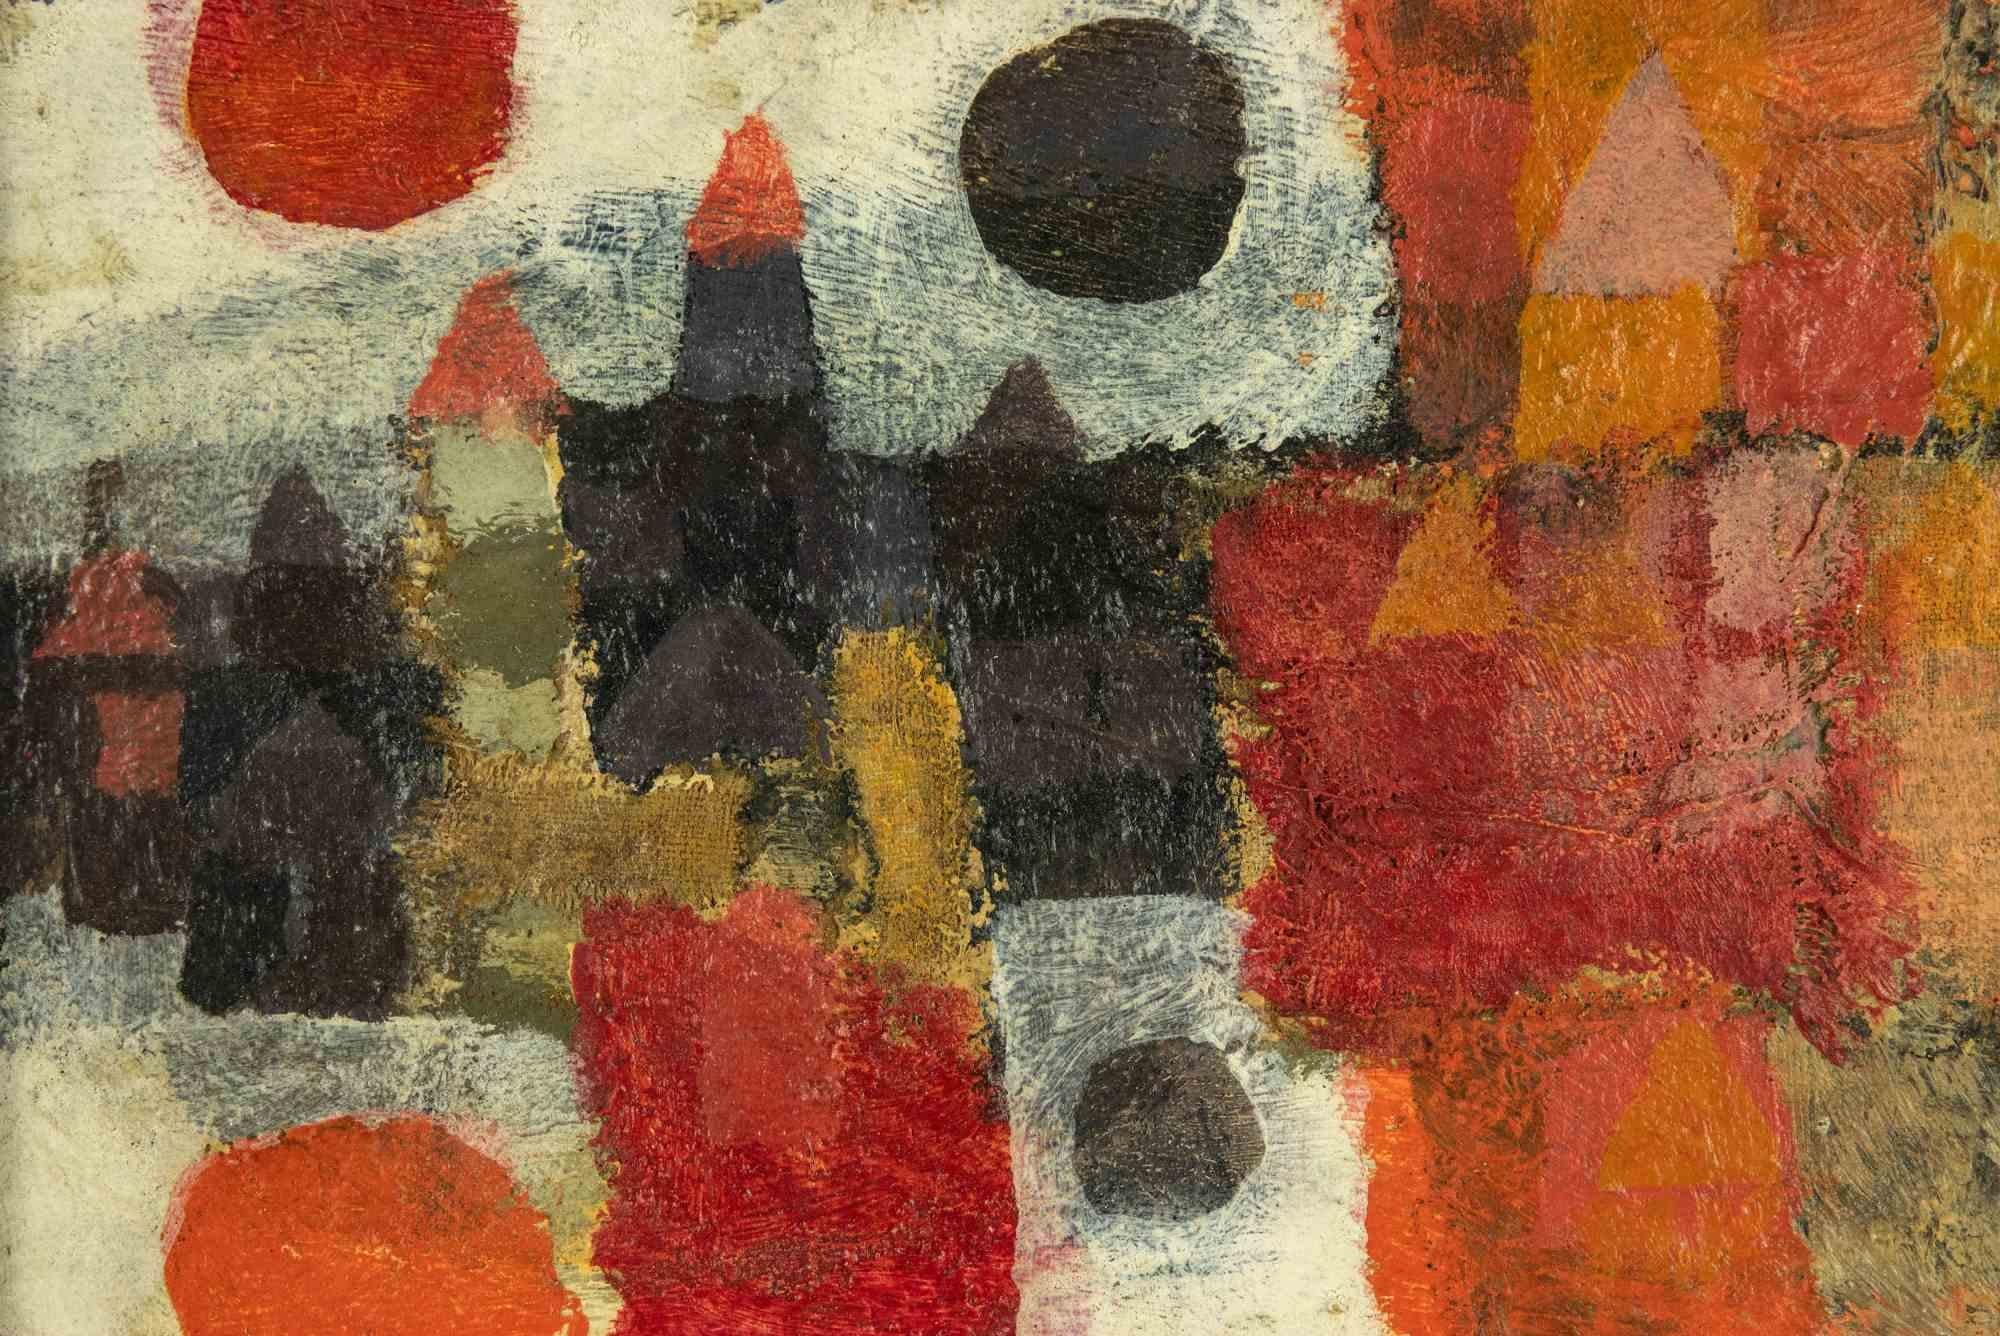 Hommage an Klee ist ein originales zeitgenössisches Kunstwerk von Sergio Barletta aus dem Jahr 1960.

Gemischtes farbiges Öl auf Masonit.

Inklusive Rahmen: 78 x 26 cm

Am oberen Rand handsigniert und datiert.